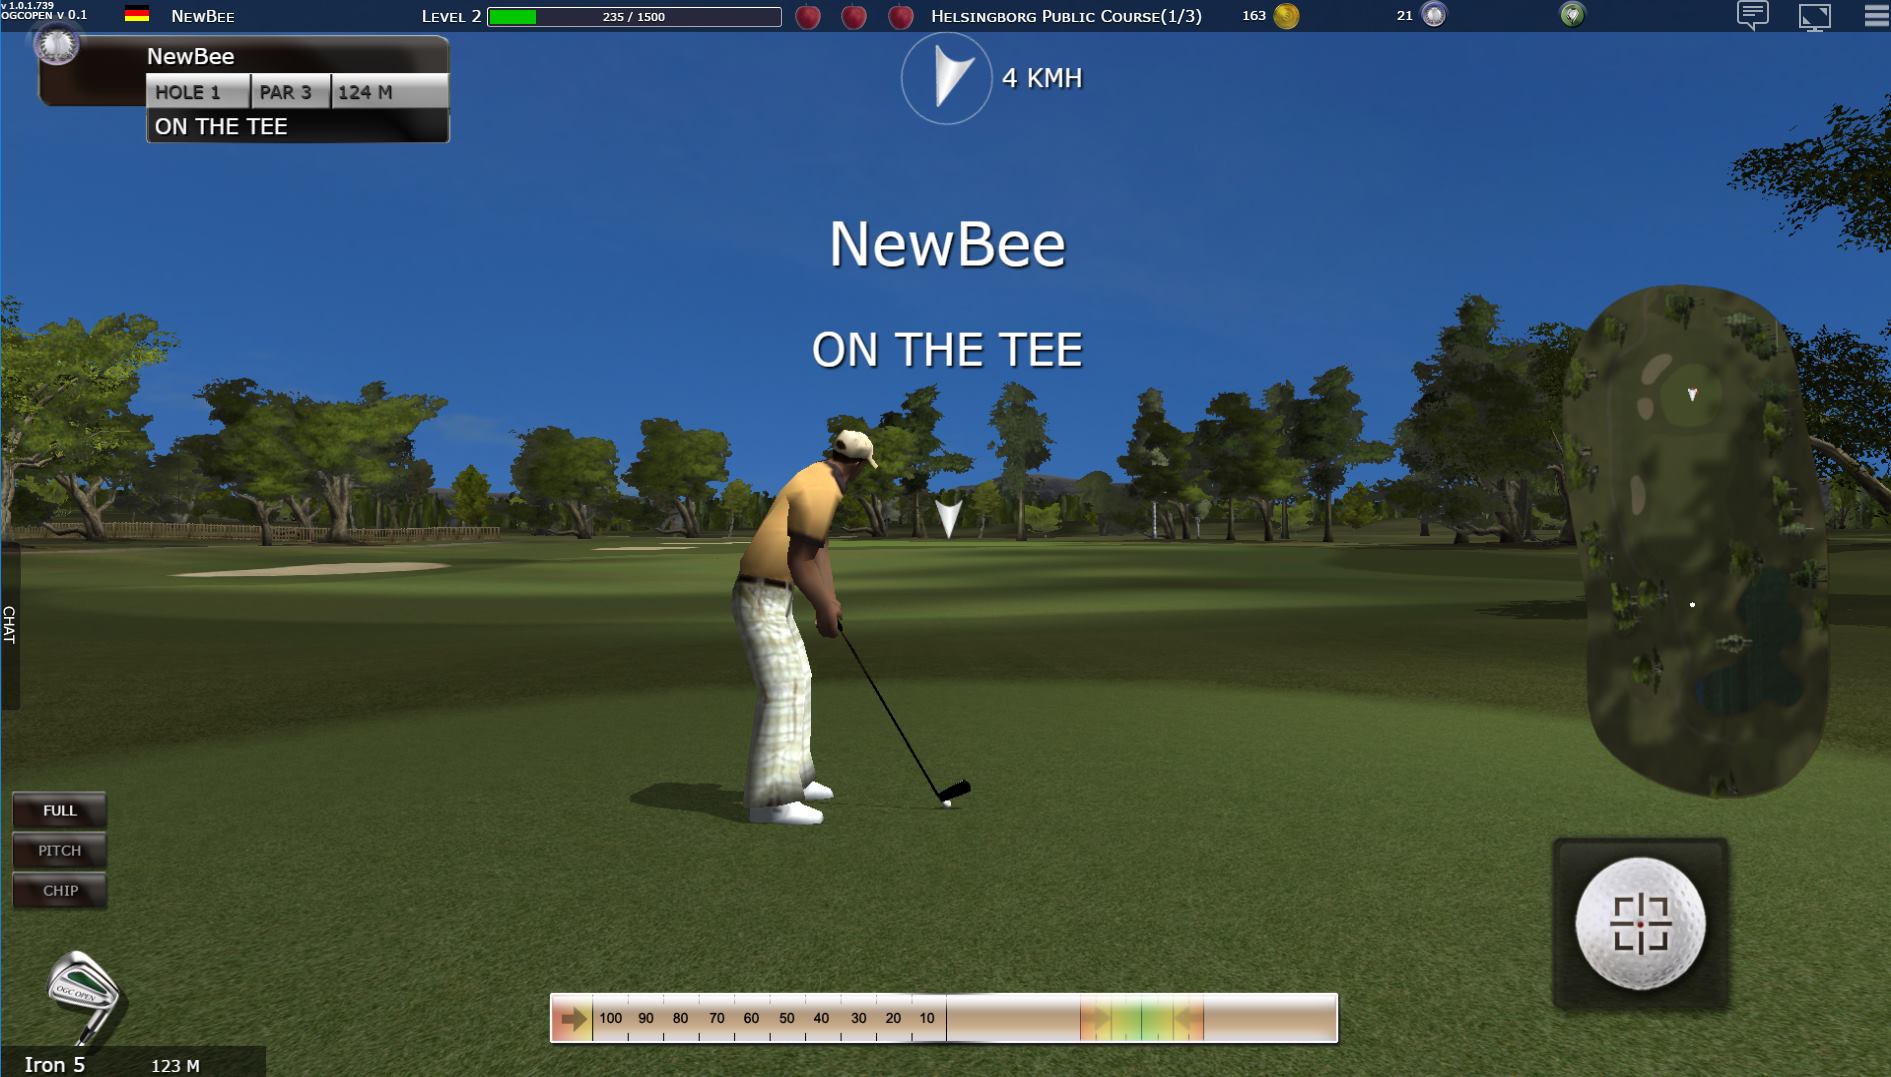 Golf Games Online